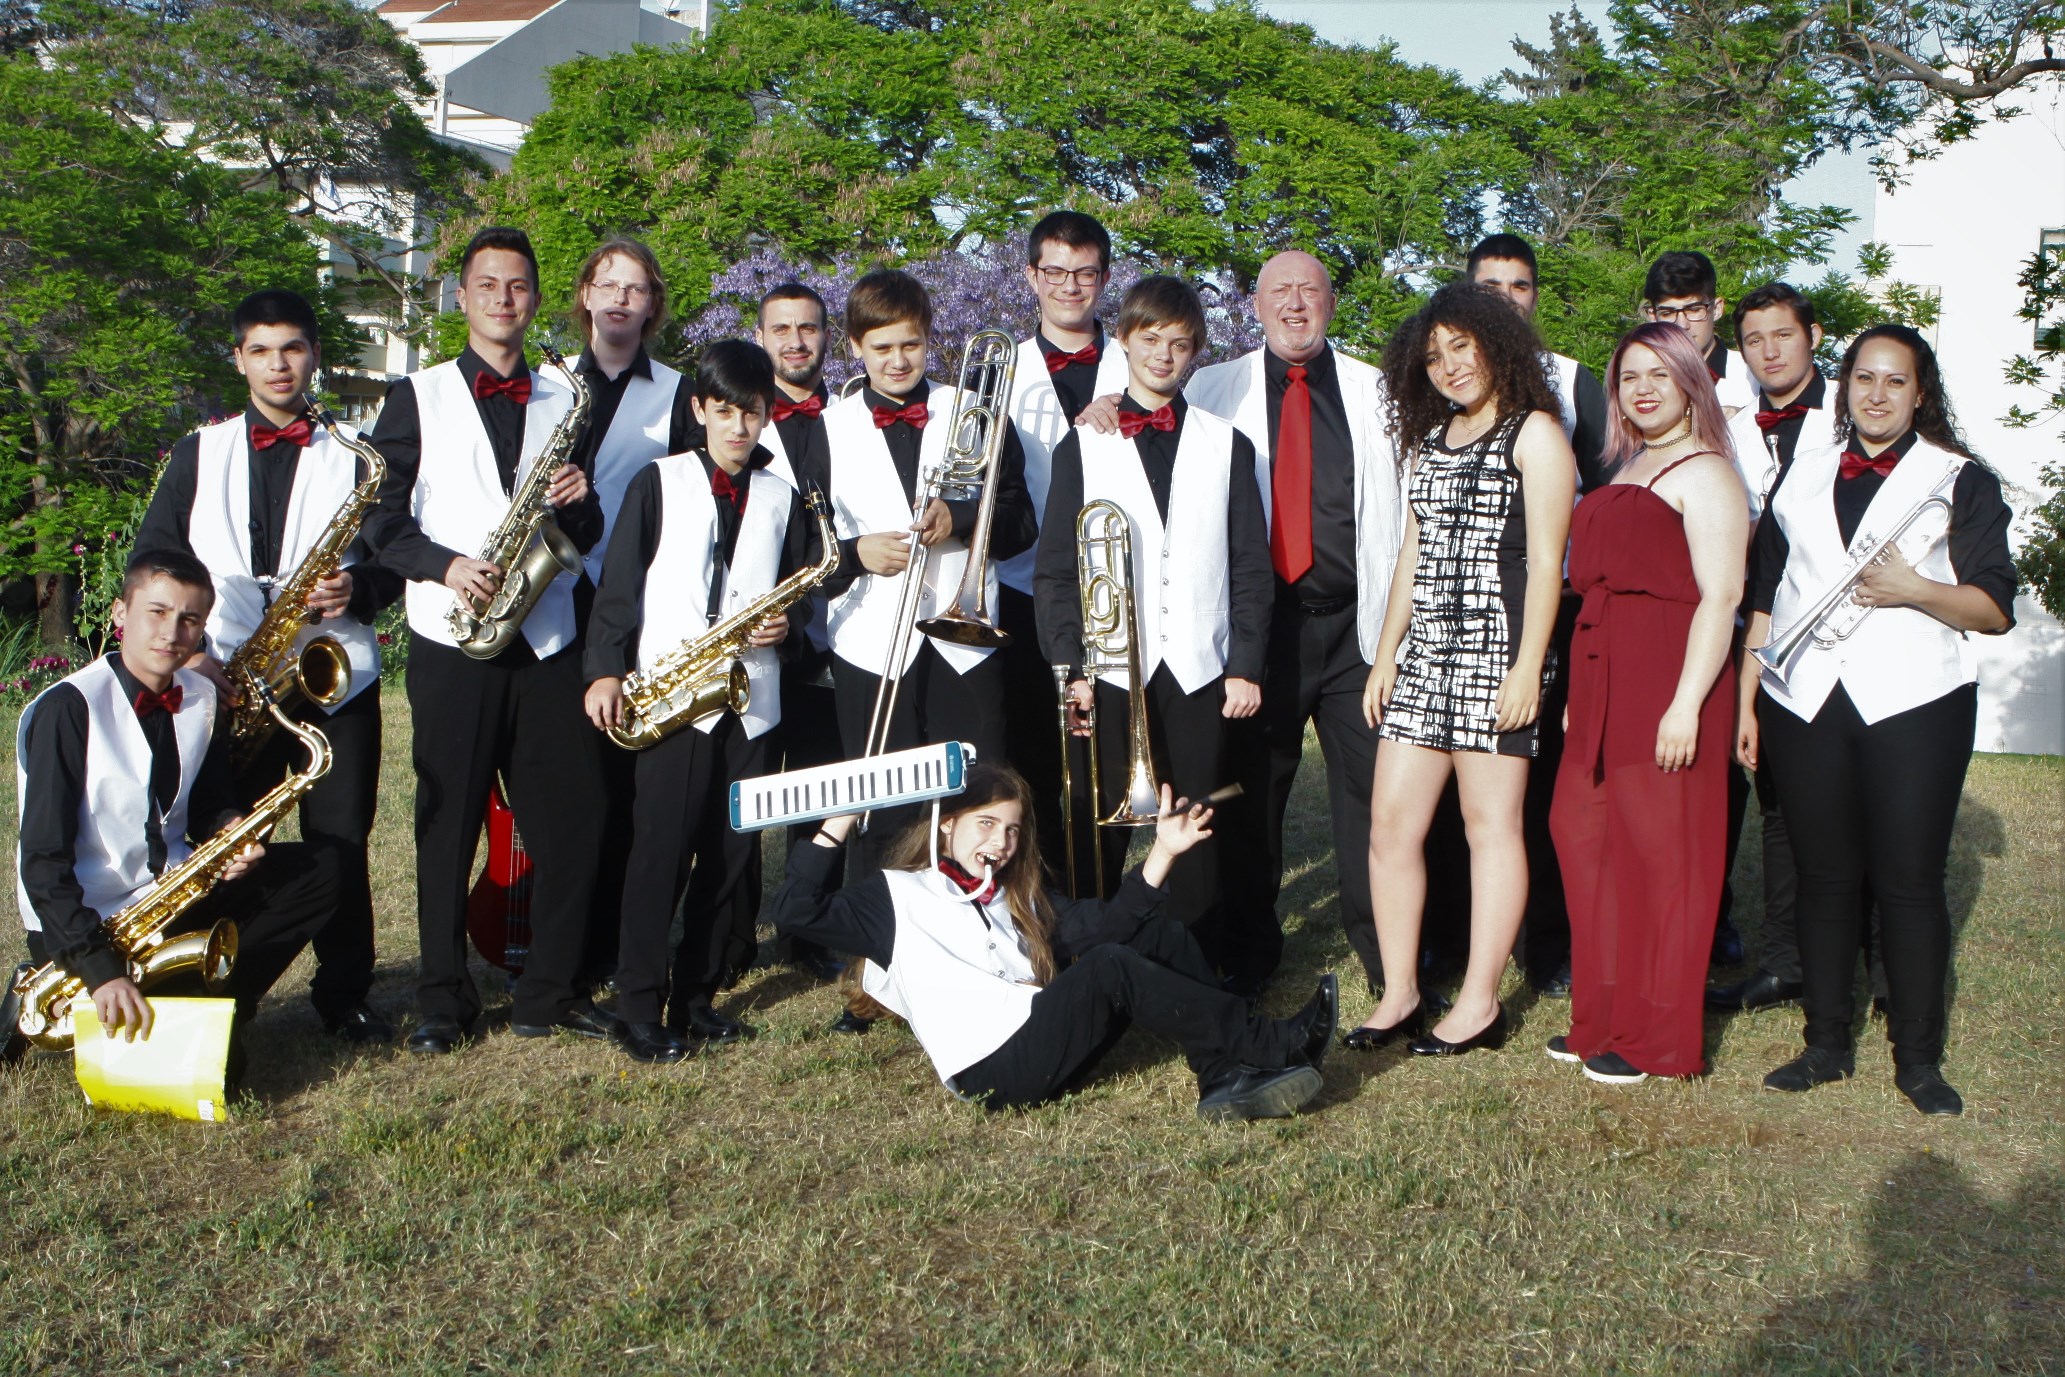 תזמורת הנוער העירונית הייצוגית של קרית אתא ה-"ביג בנד" נבחרה לייצג את העיר בפסטיבל להקות באוסטריה